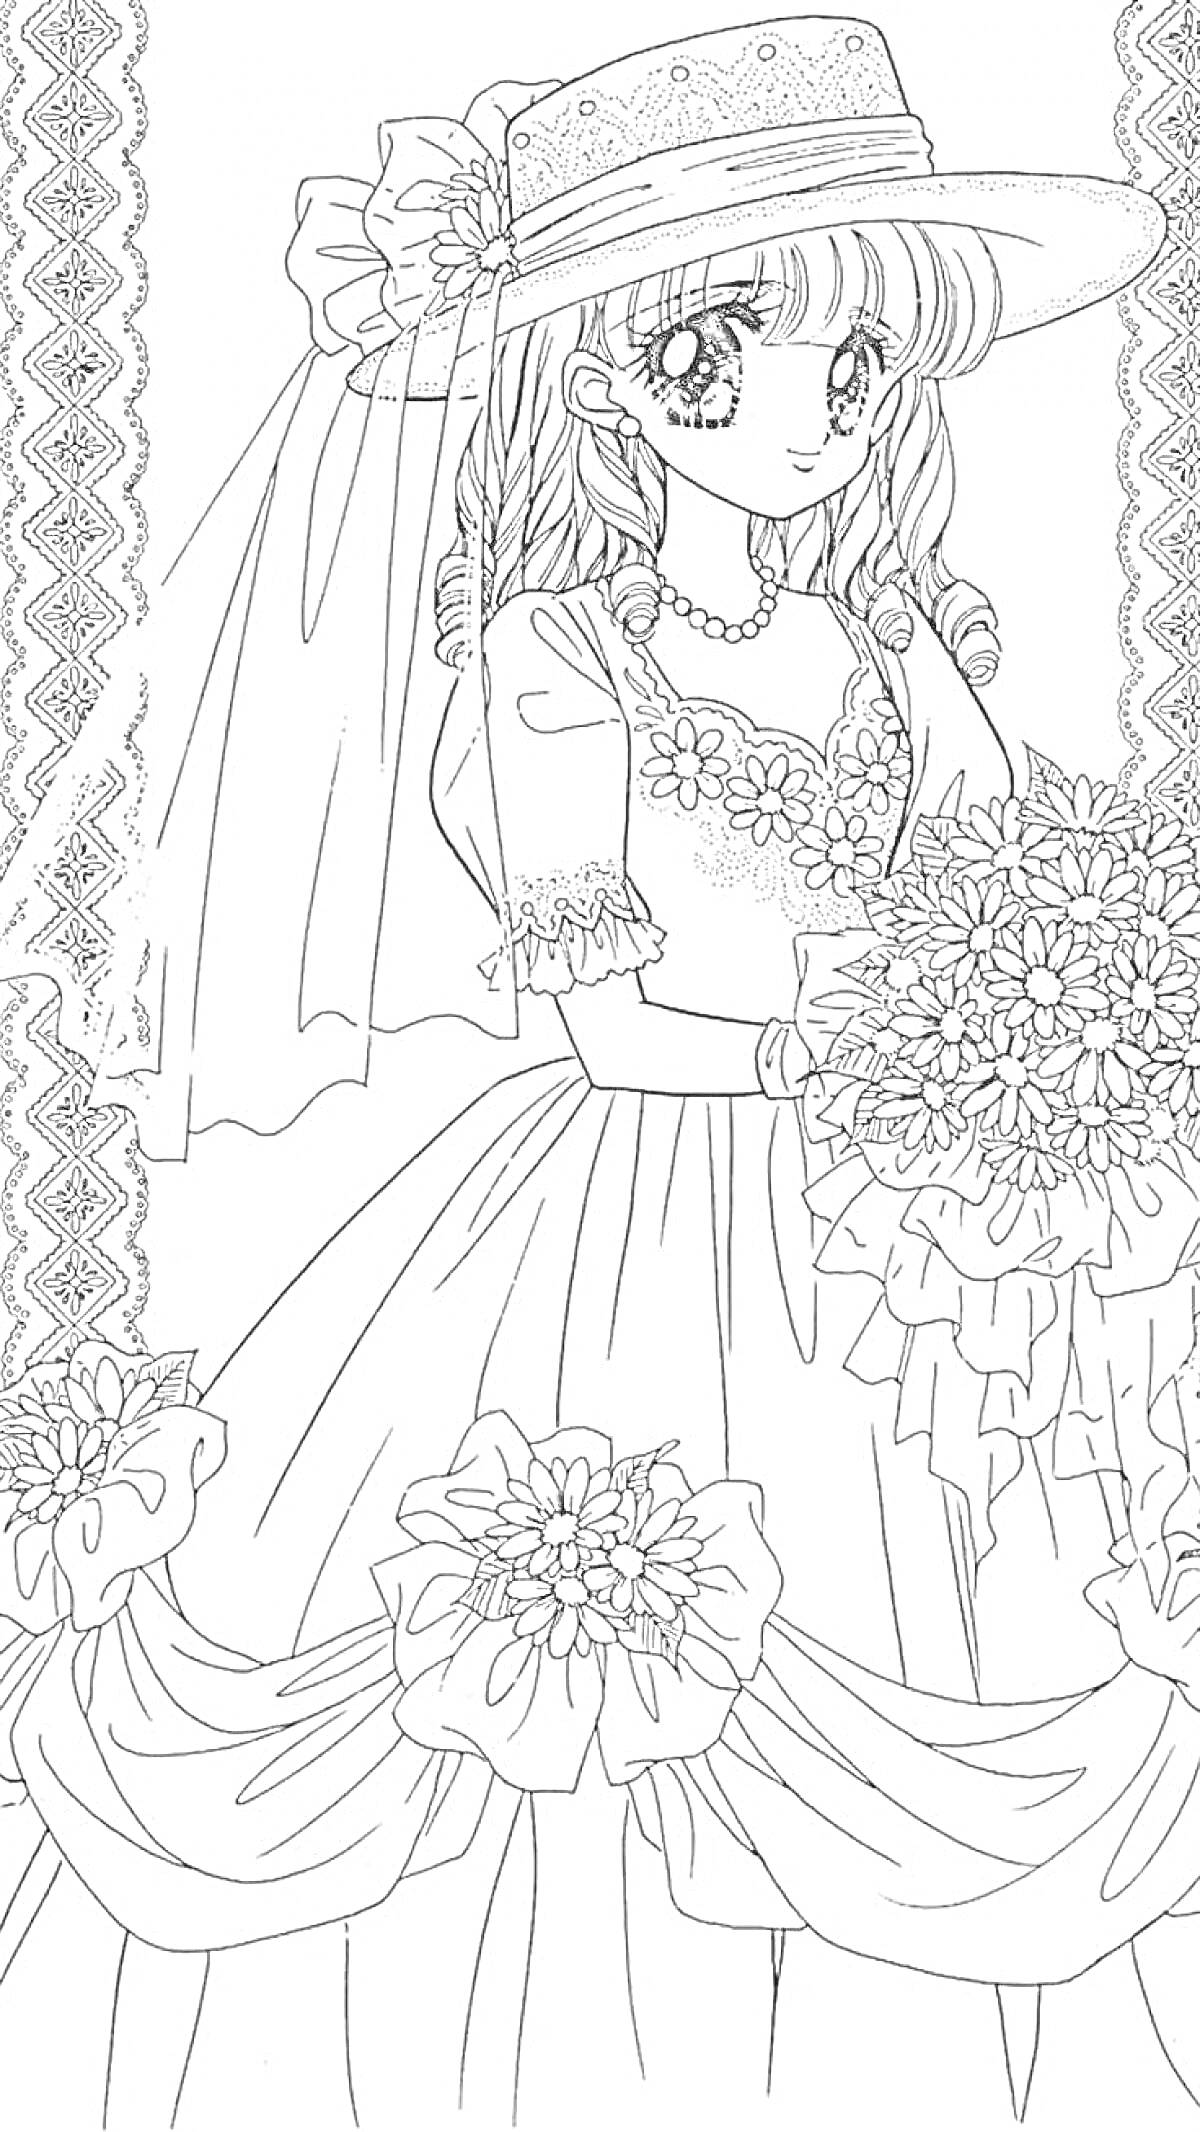 Раскраска Девушка в шляпе с букетом и цветочным платьем на фоне узорчатых лент